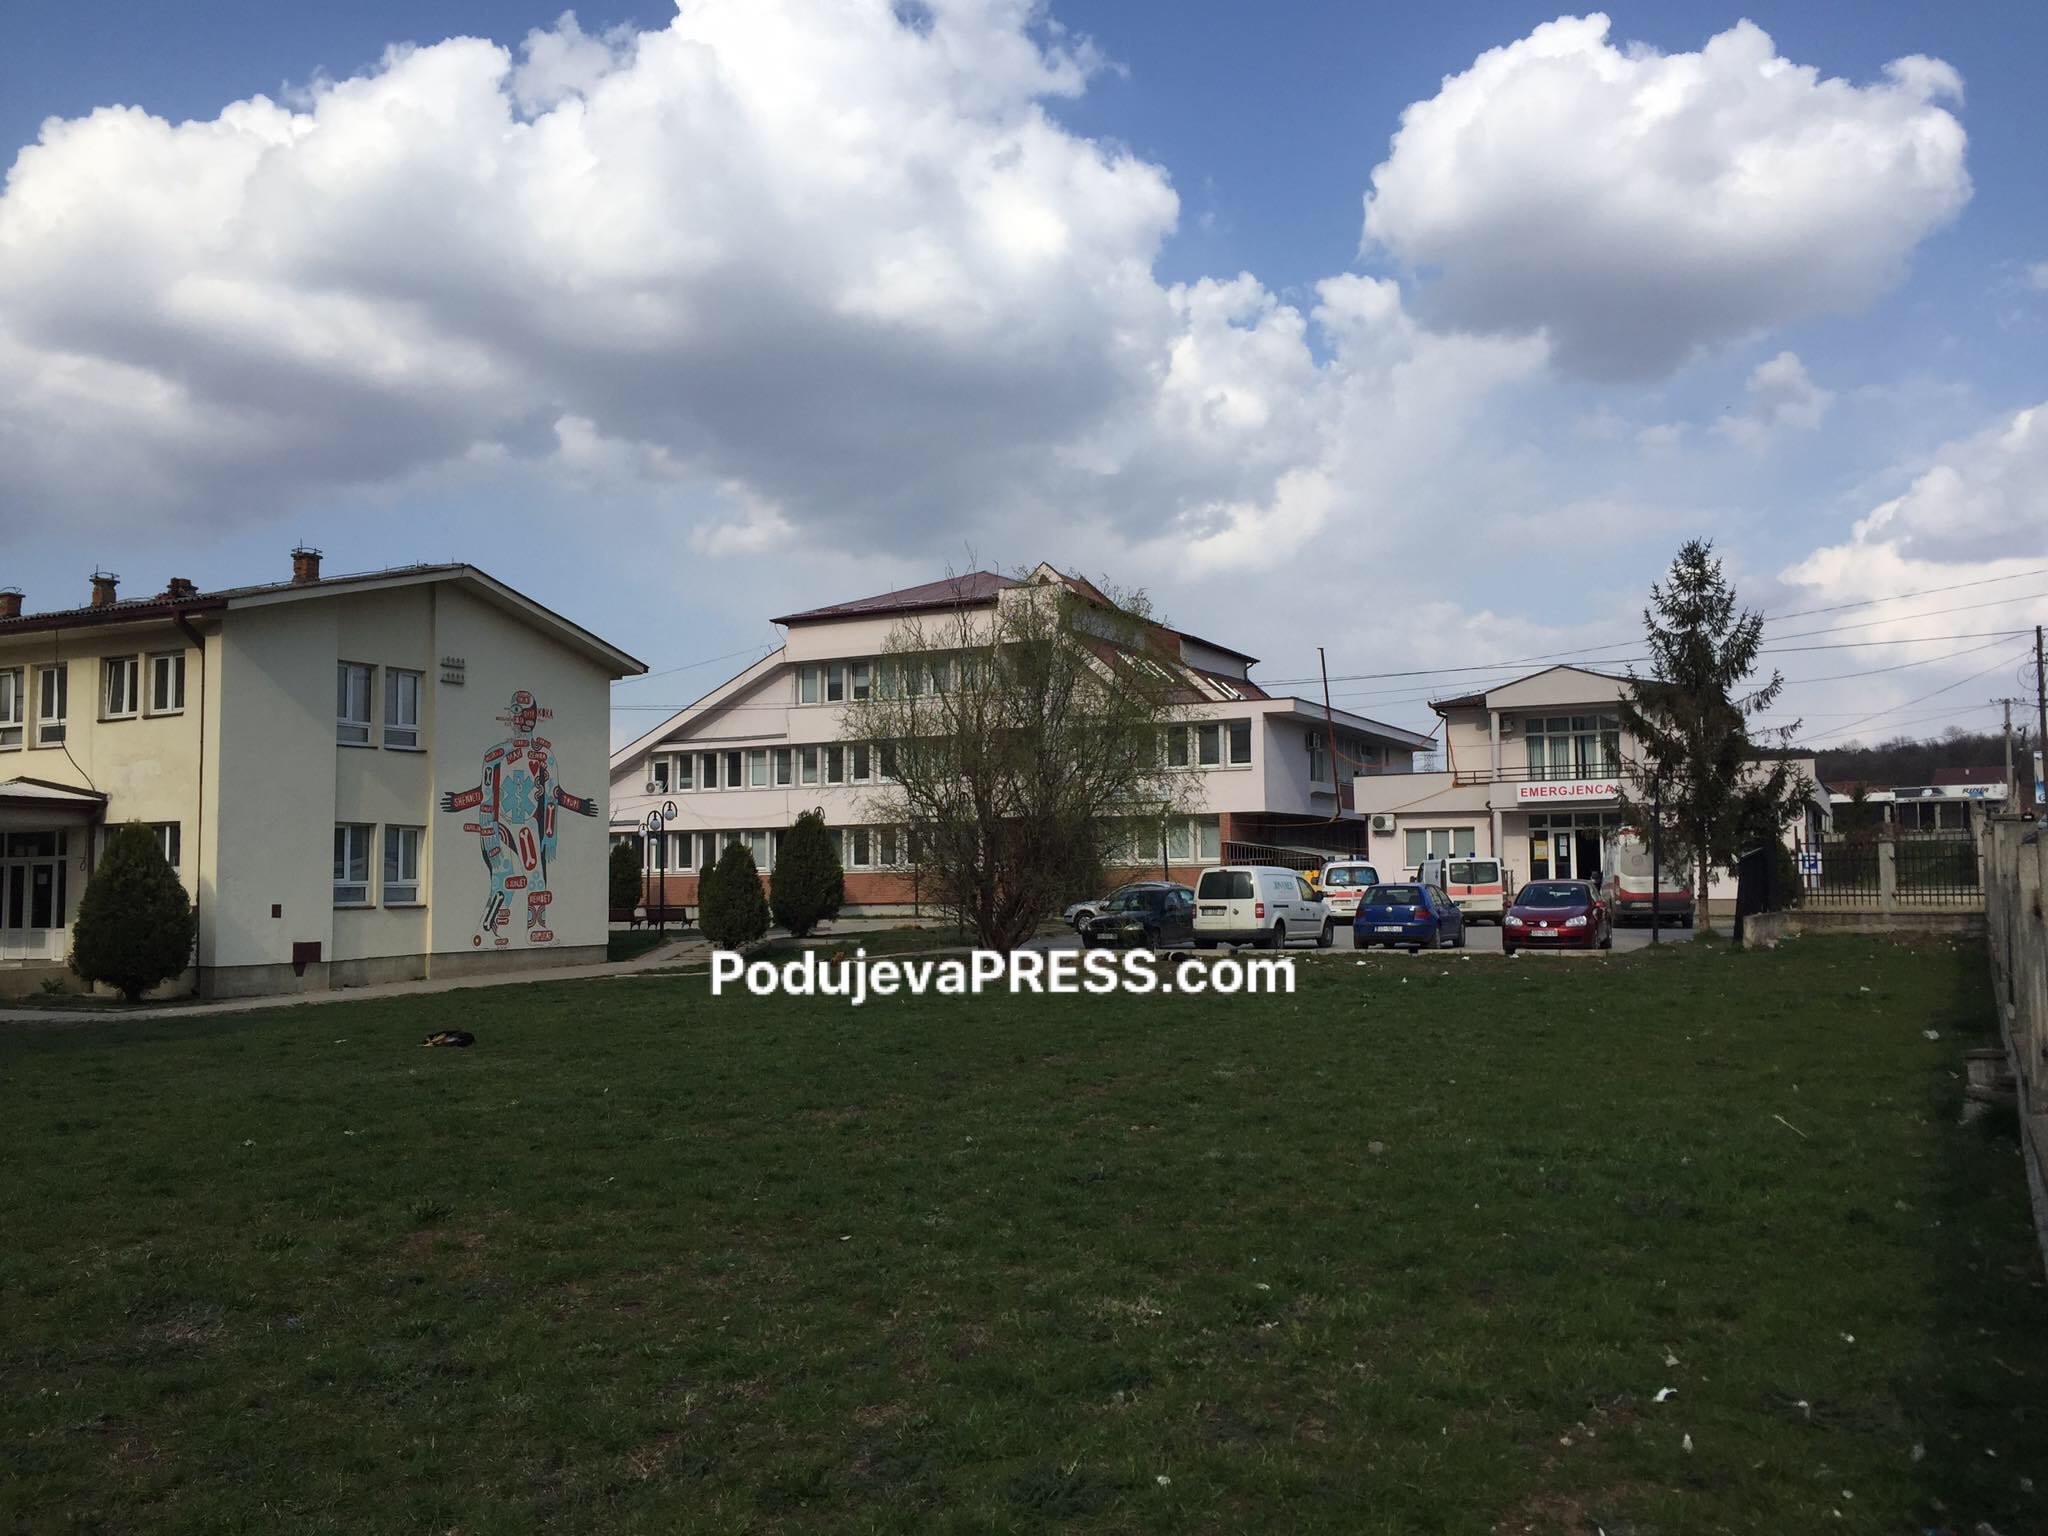  Në Podujevë: 4 të infektuar, 1 i vdekur dhe 1 i shëruar